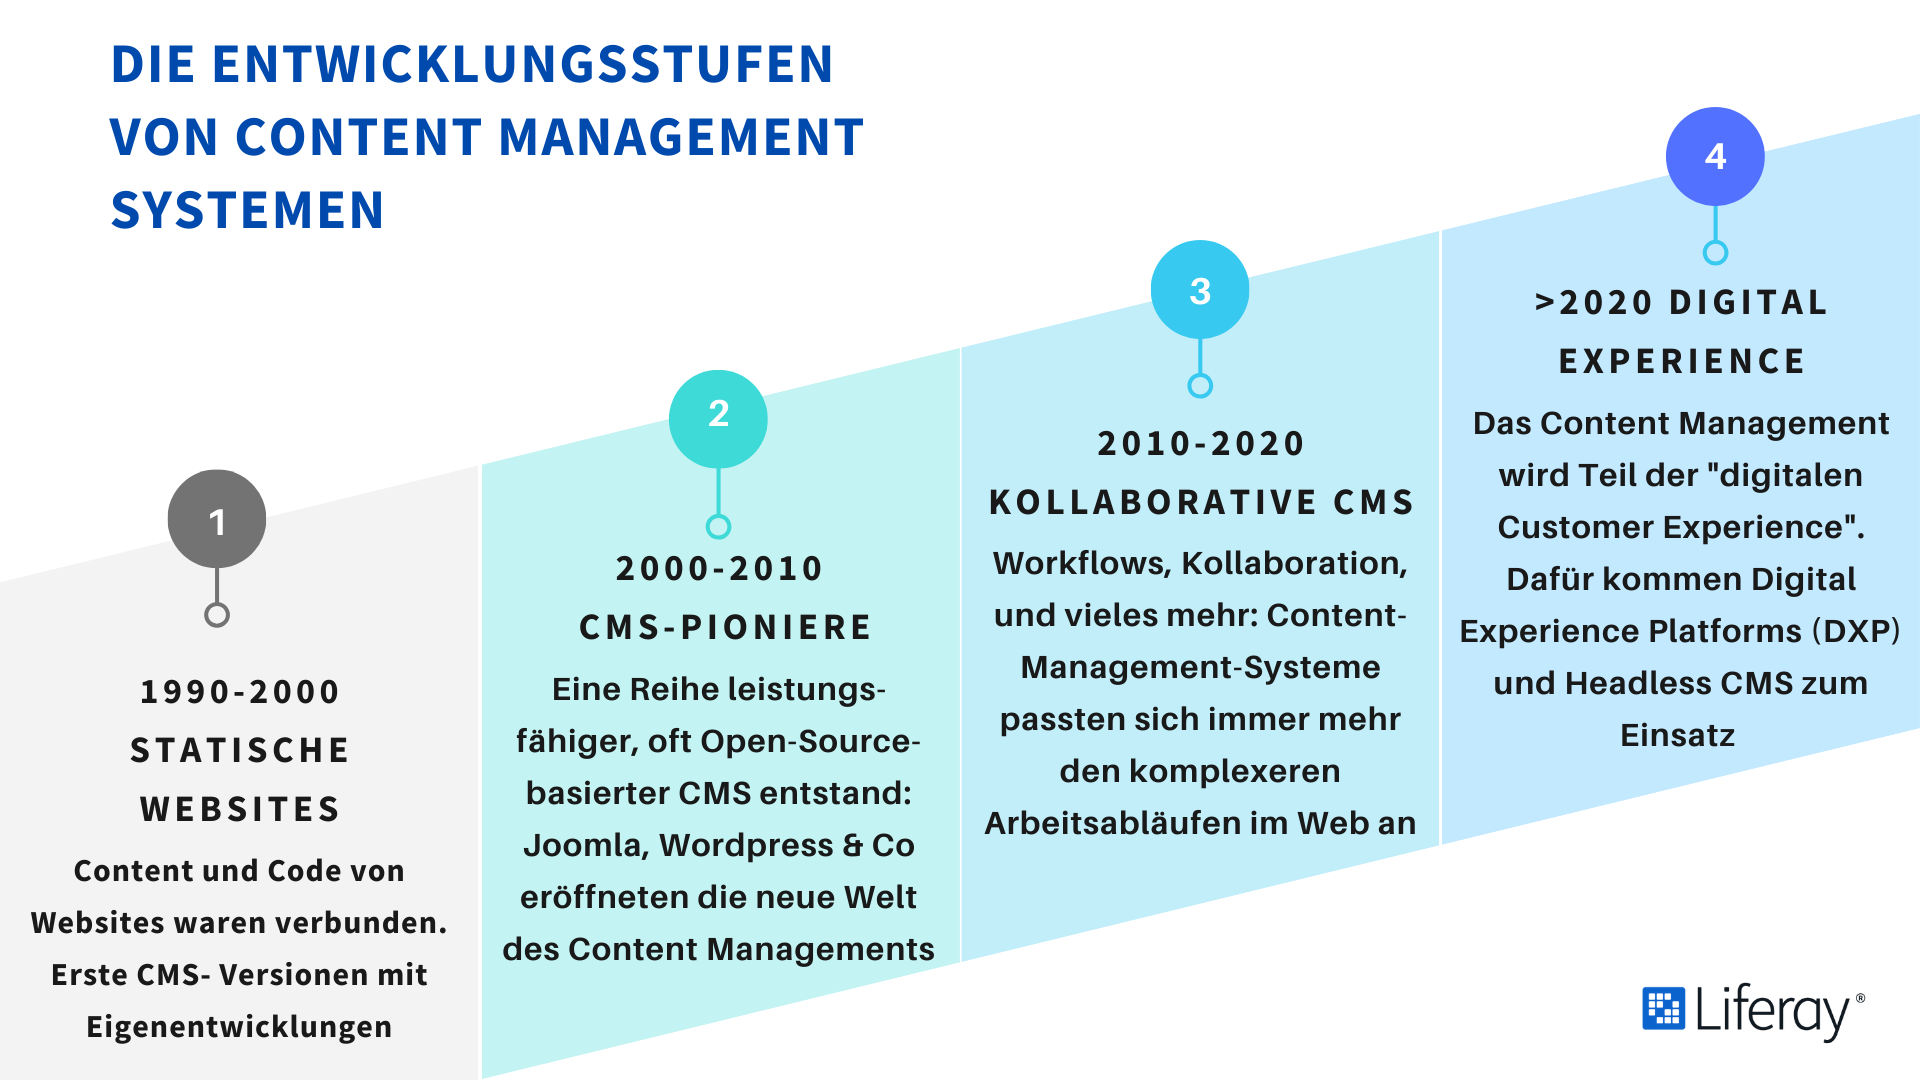 Entwicklungsstufen von Content Management Systemen (CMS) von 1990 bis heute